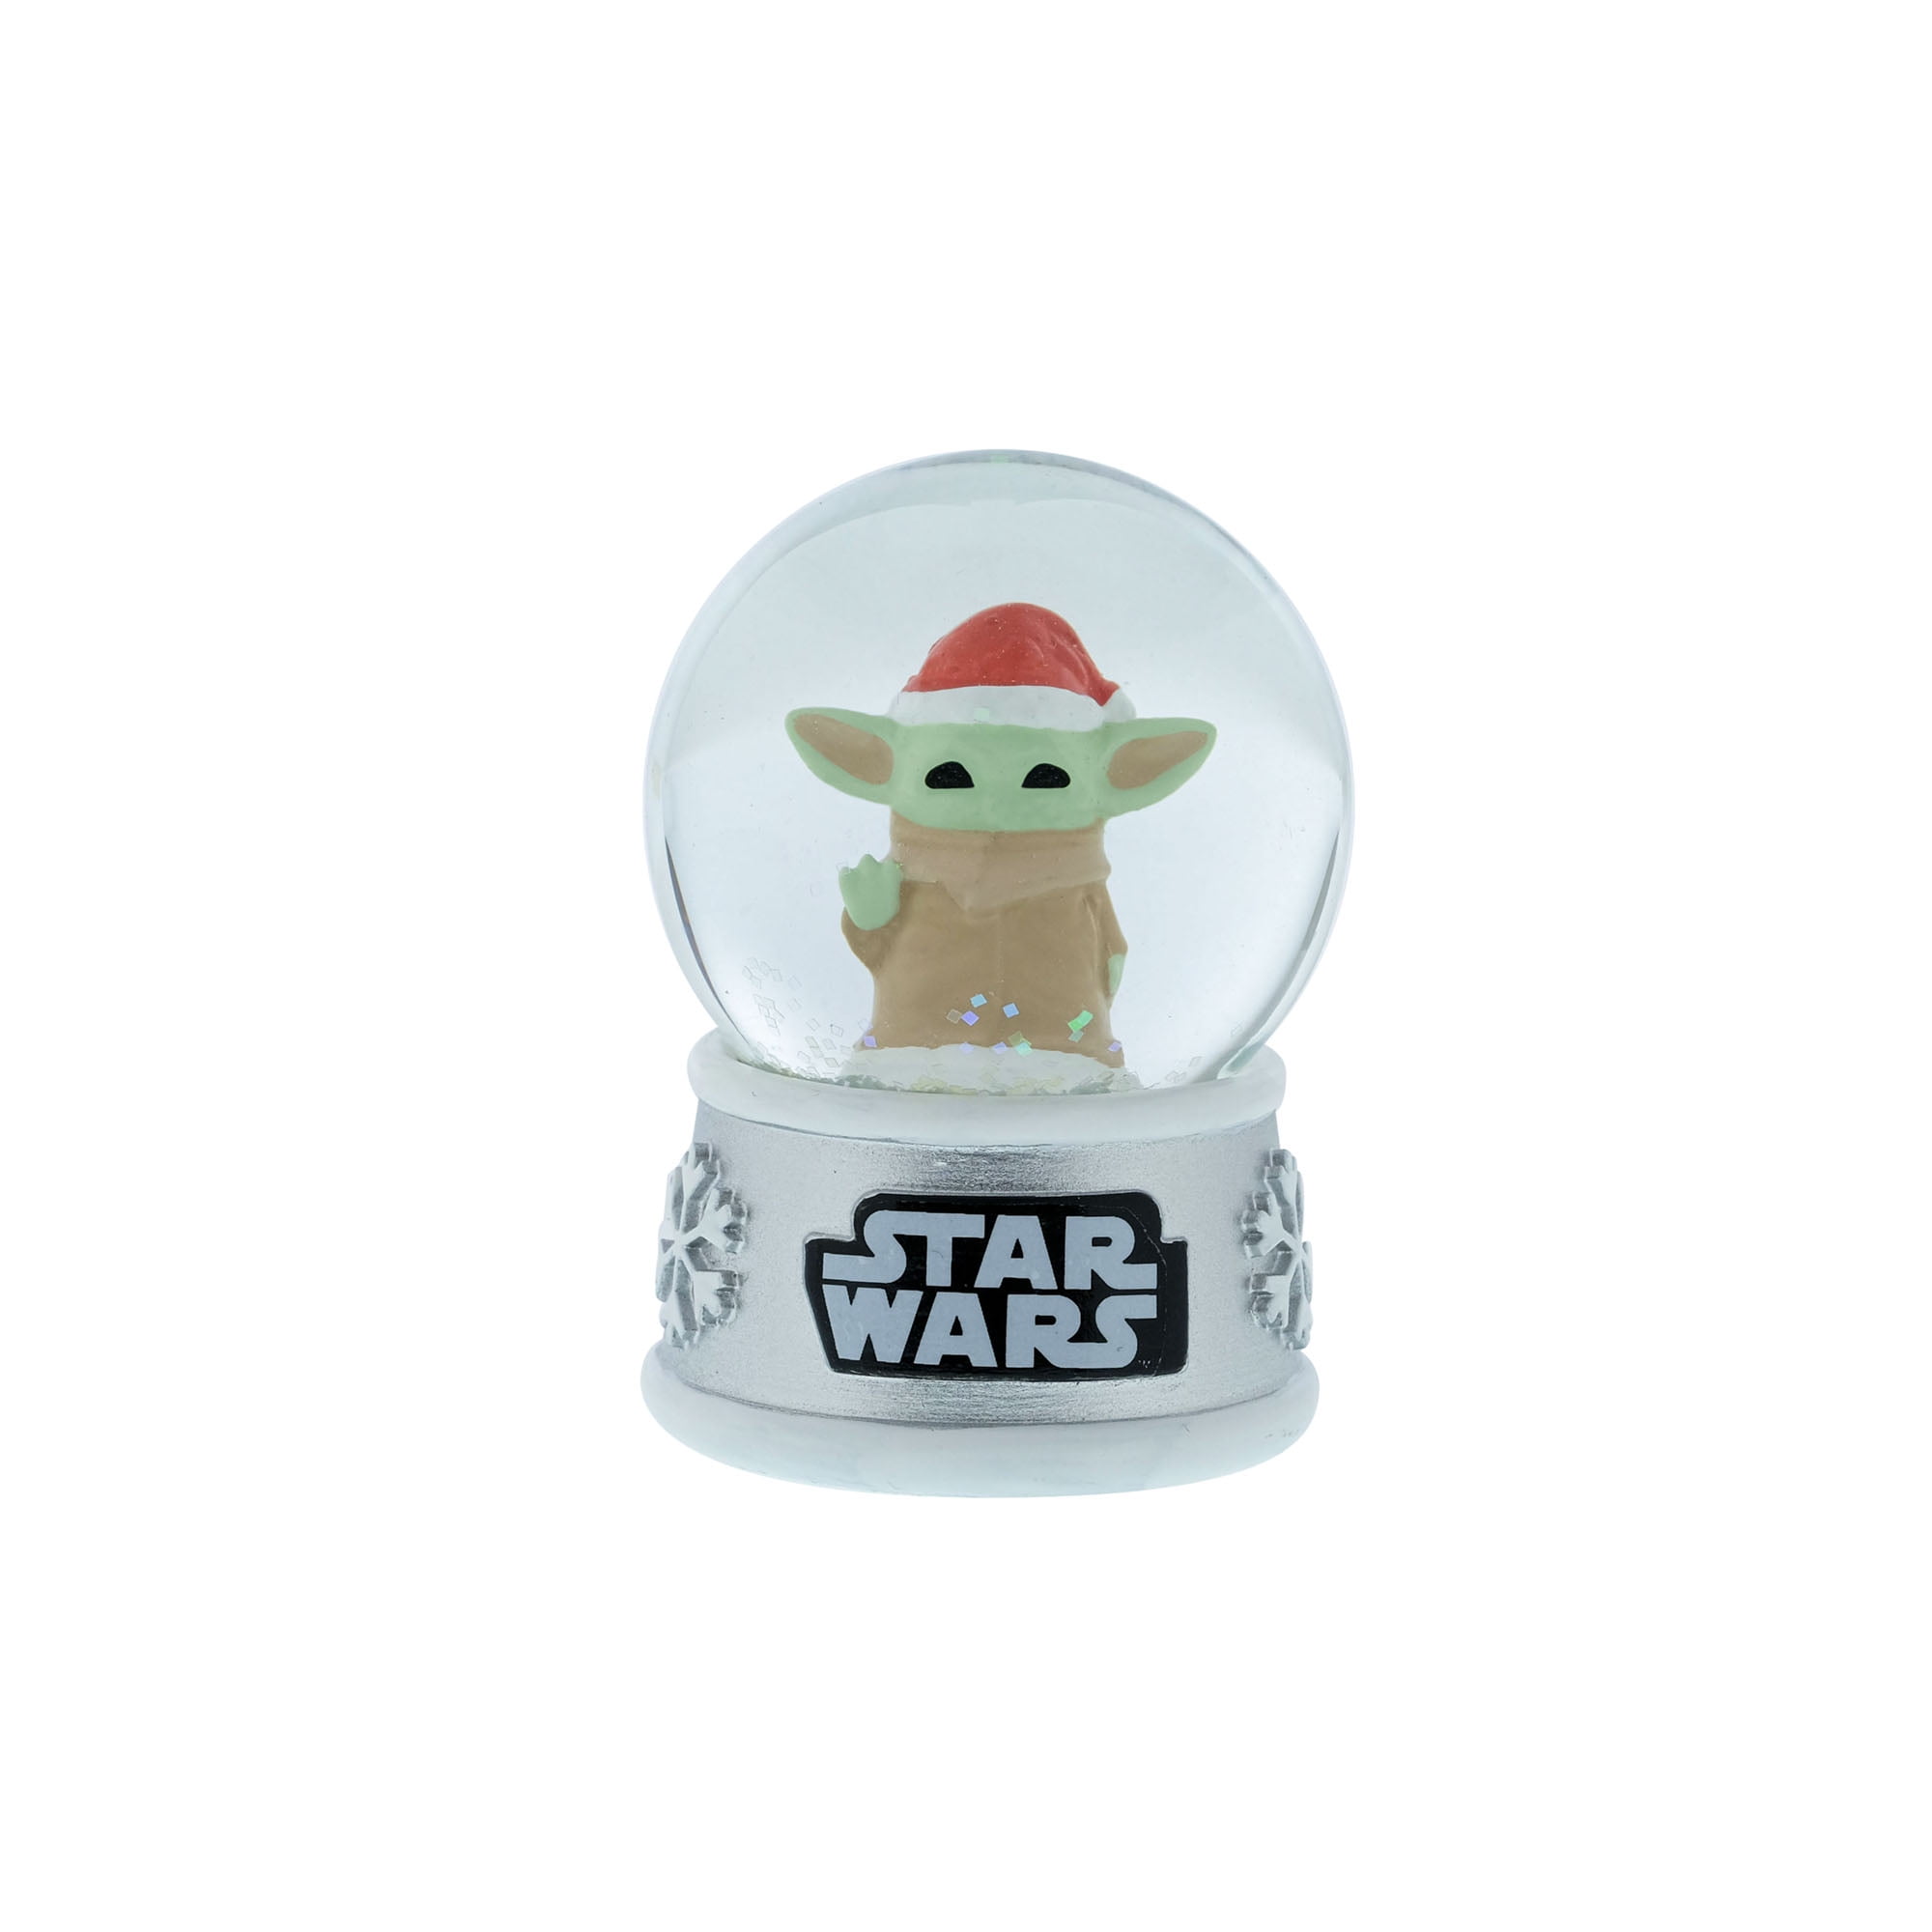 Star Wars Yoda Snow Globe, 55MM, Resin, Multi-Color